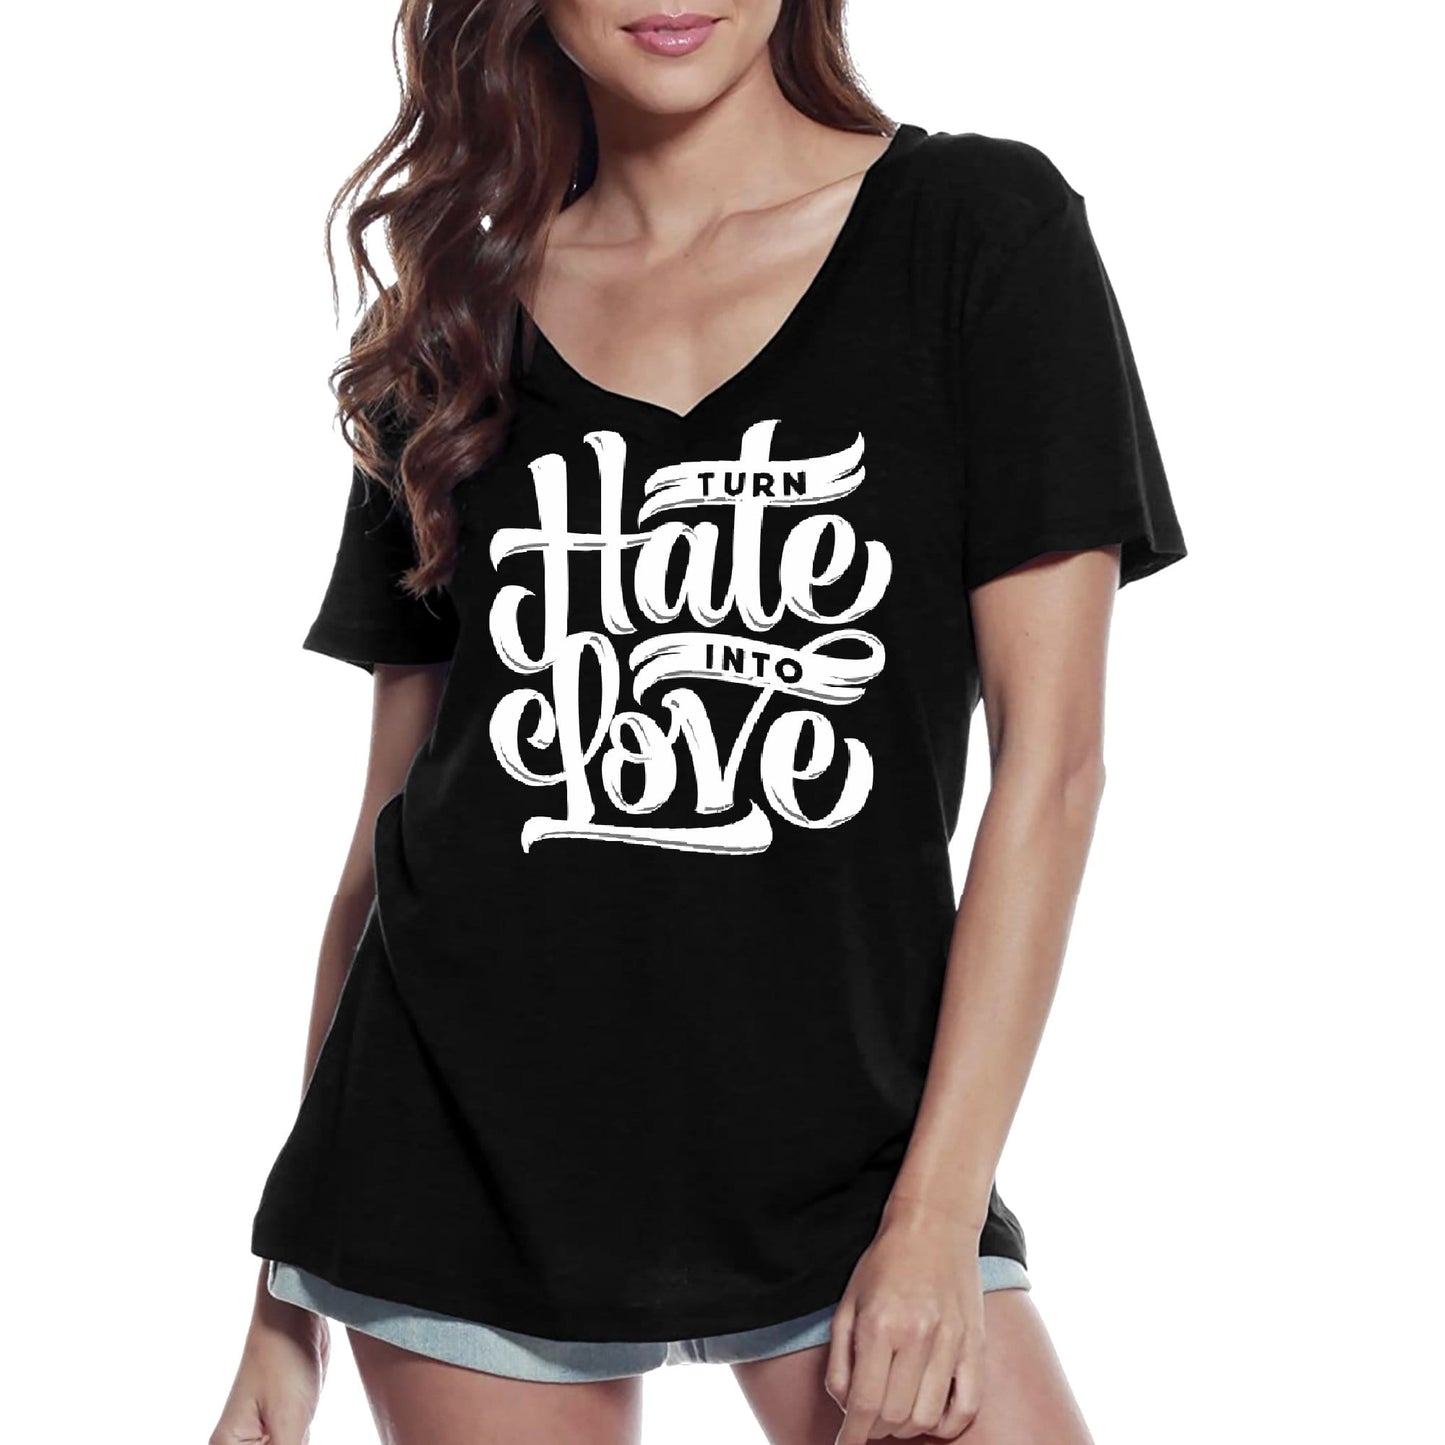 ULTRABASIC Women's V-Neck T-Shirt Turn Hate Into Love - Short Sleeve Tee shirt